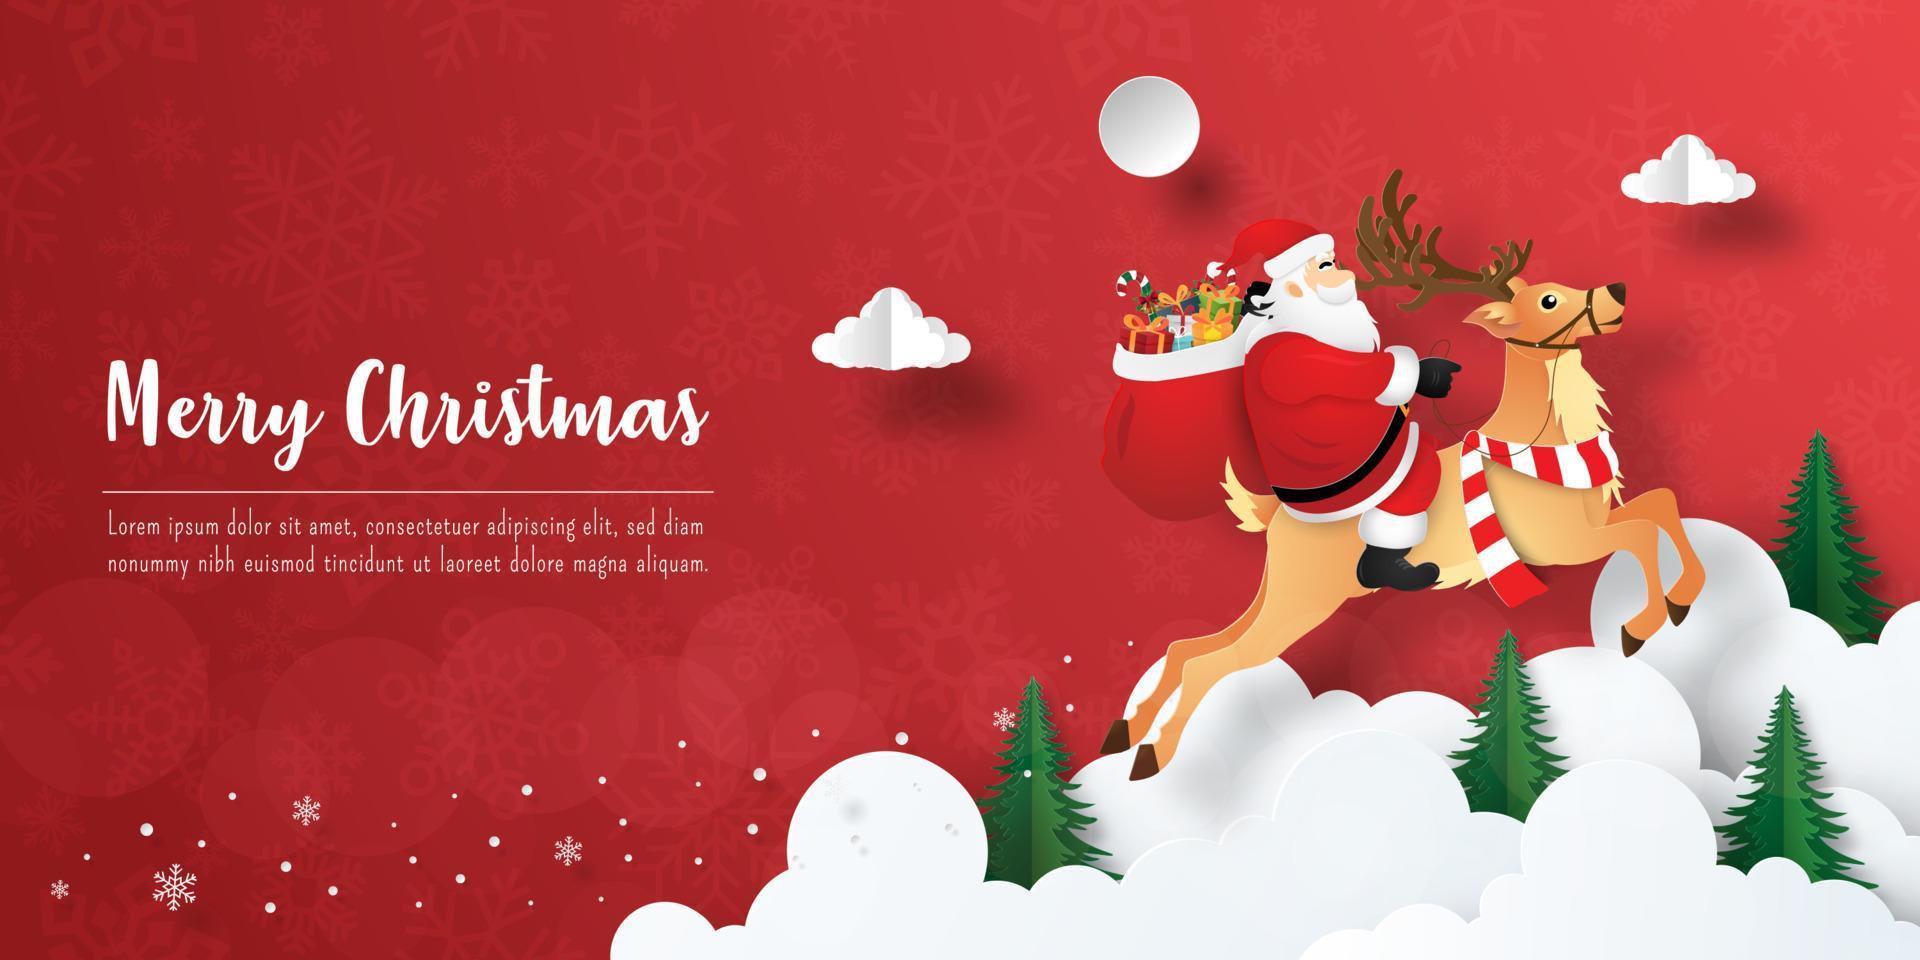 feliz navidad y próspero año nuevo, postal de banner navideño de santa claus y renos en el cielo vector